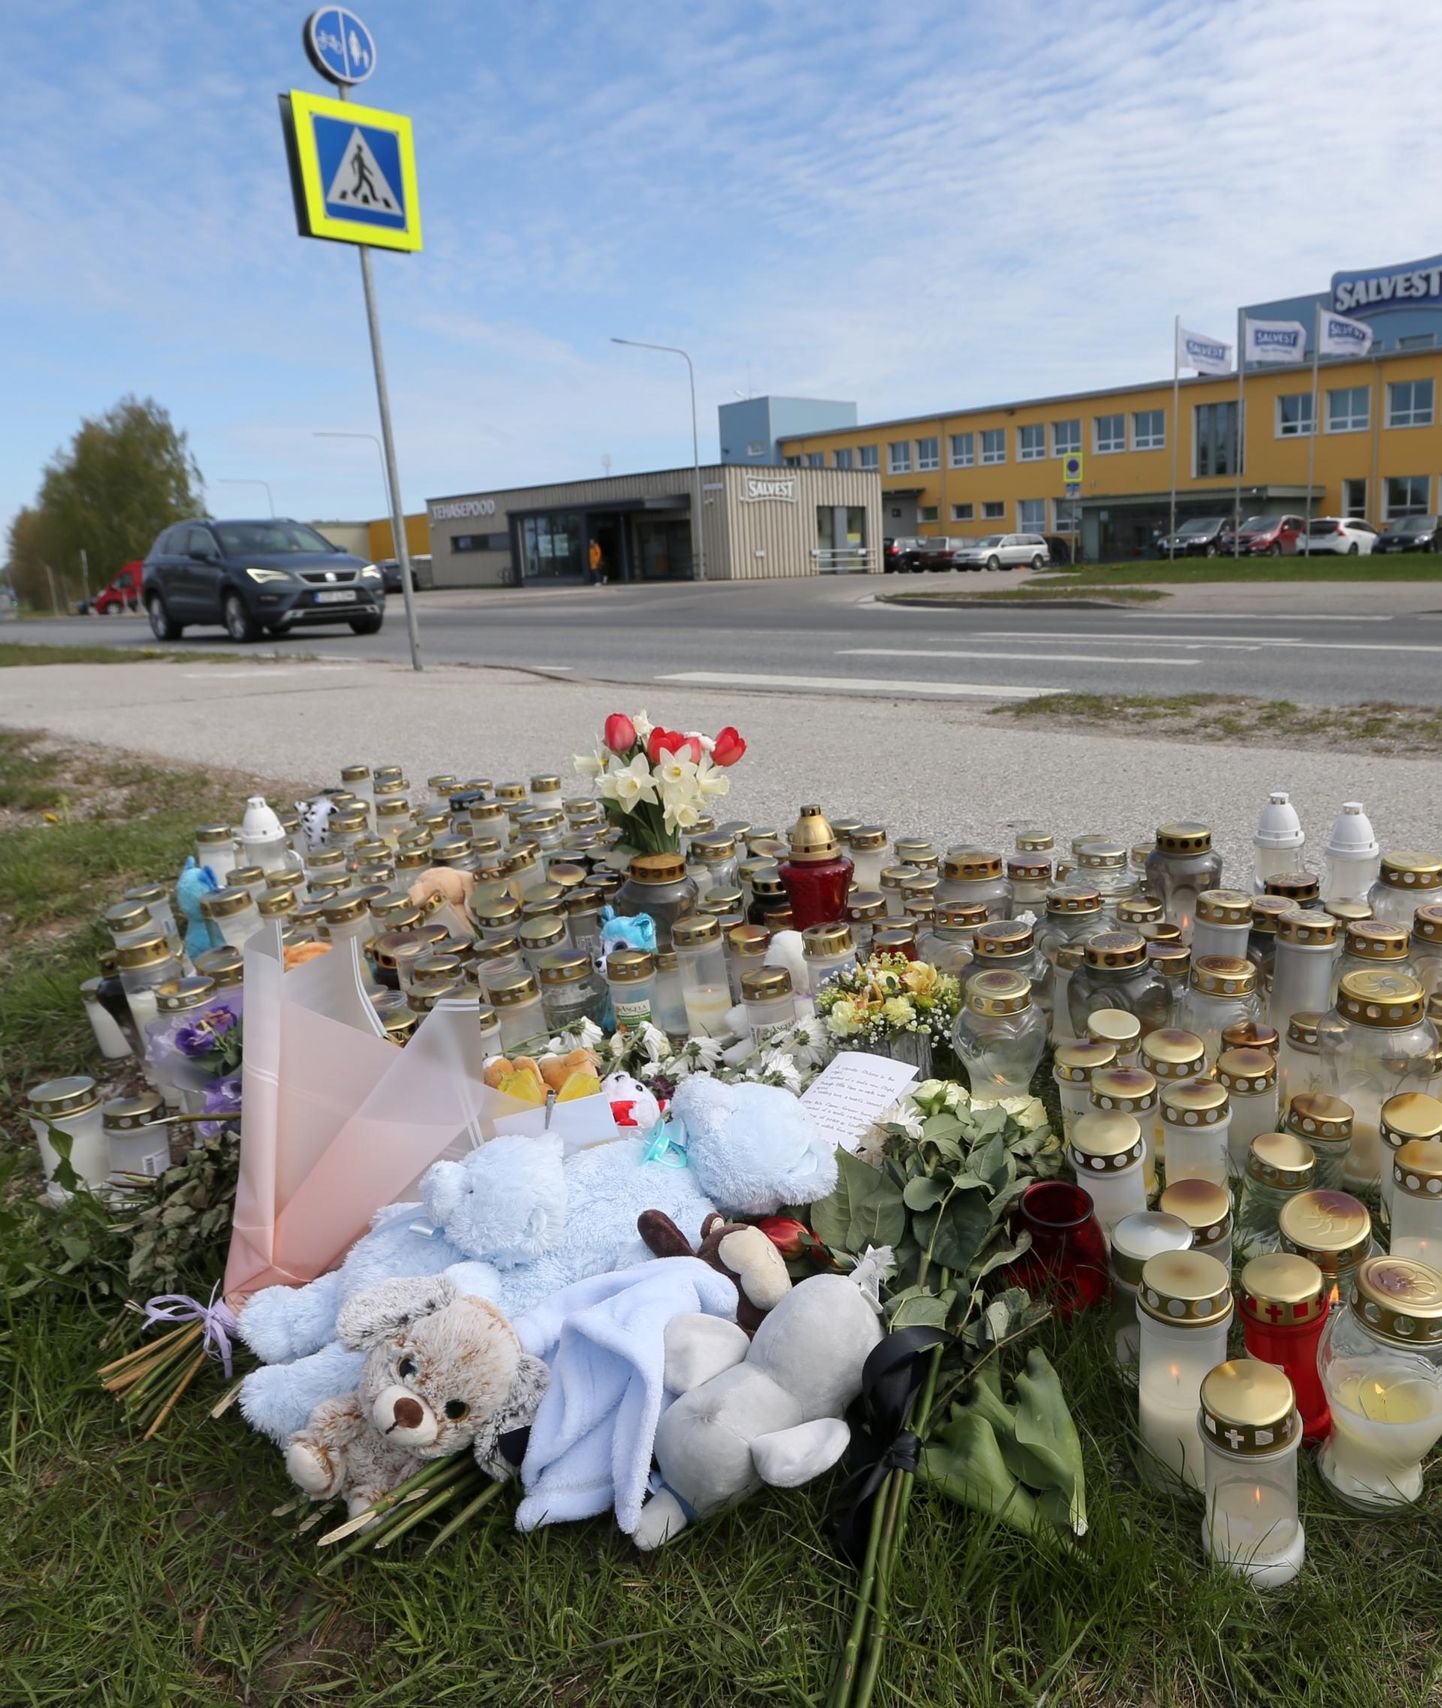 08.05.2023, Tartu
Pildil küünlad ja mänguasjad Salvesti juures autoőnnetuses hukkunud lapse määlestuseks.

Foto Sille Annuk, Tartu Postimees